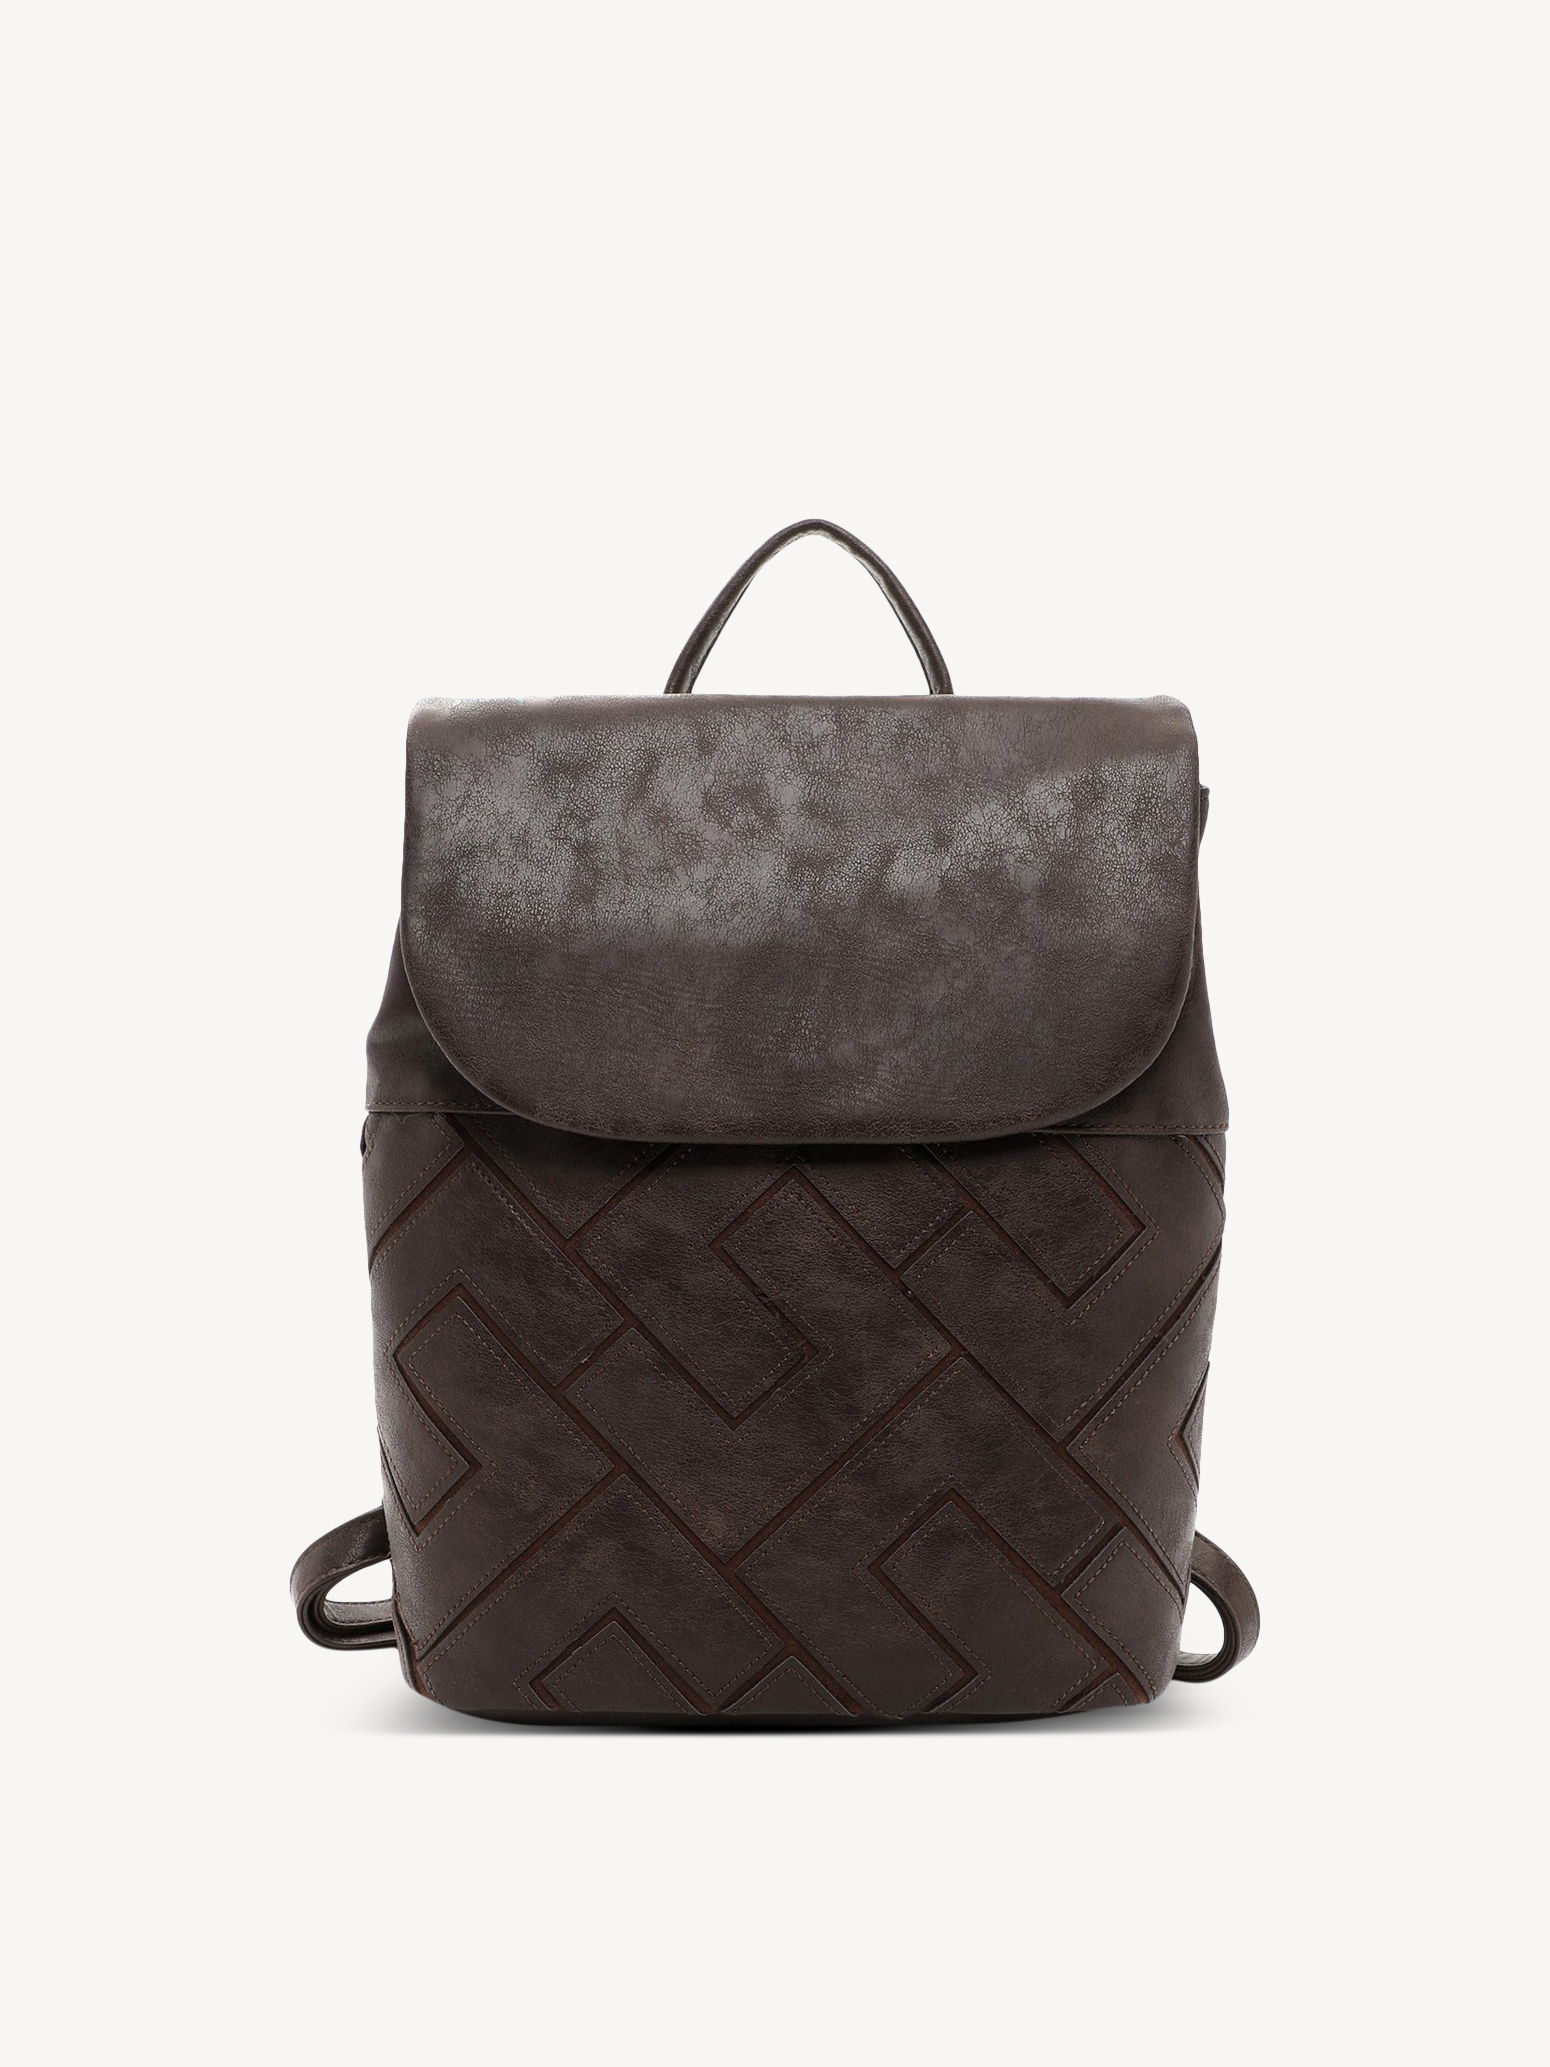 Backpack - brown